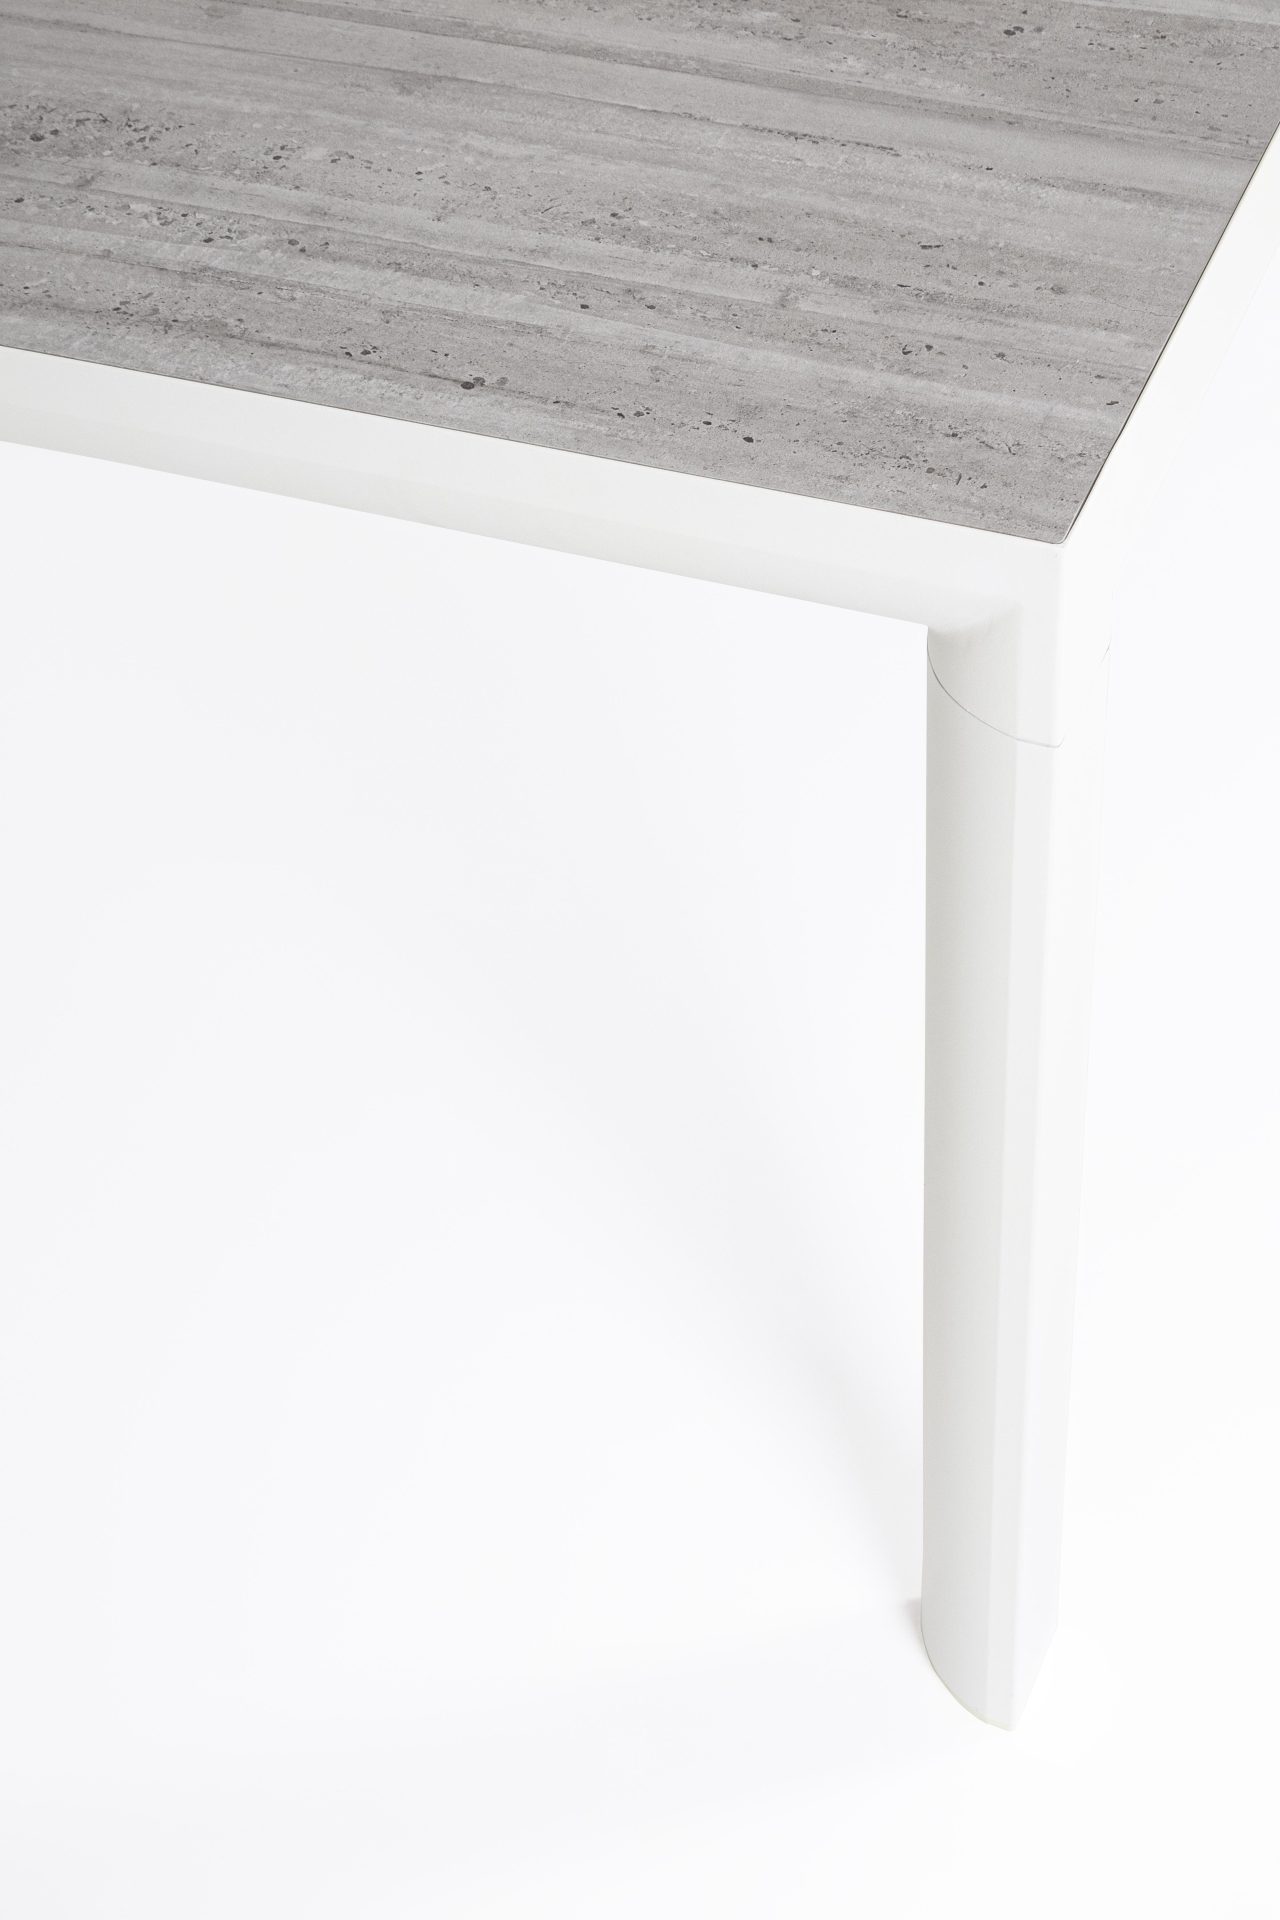 Der Gartentisch Mason überzeugt mit seinem modernen Design. Gefertigt wurde er aus Keramik, welcher einen grauen Farbton besitzt. Das Gestell ist aus Aluminium und hat eine weiße Farbe. Der Tisch verfügt über eine Länge von 160 cm und ist für den Outdoor 